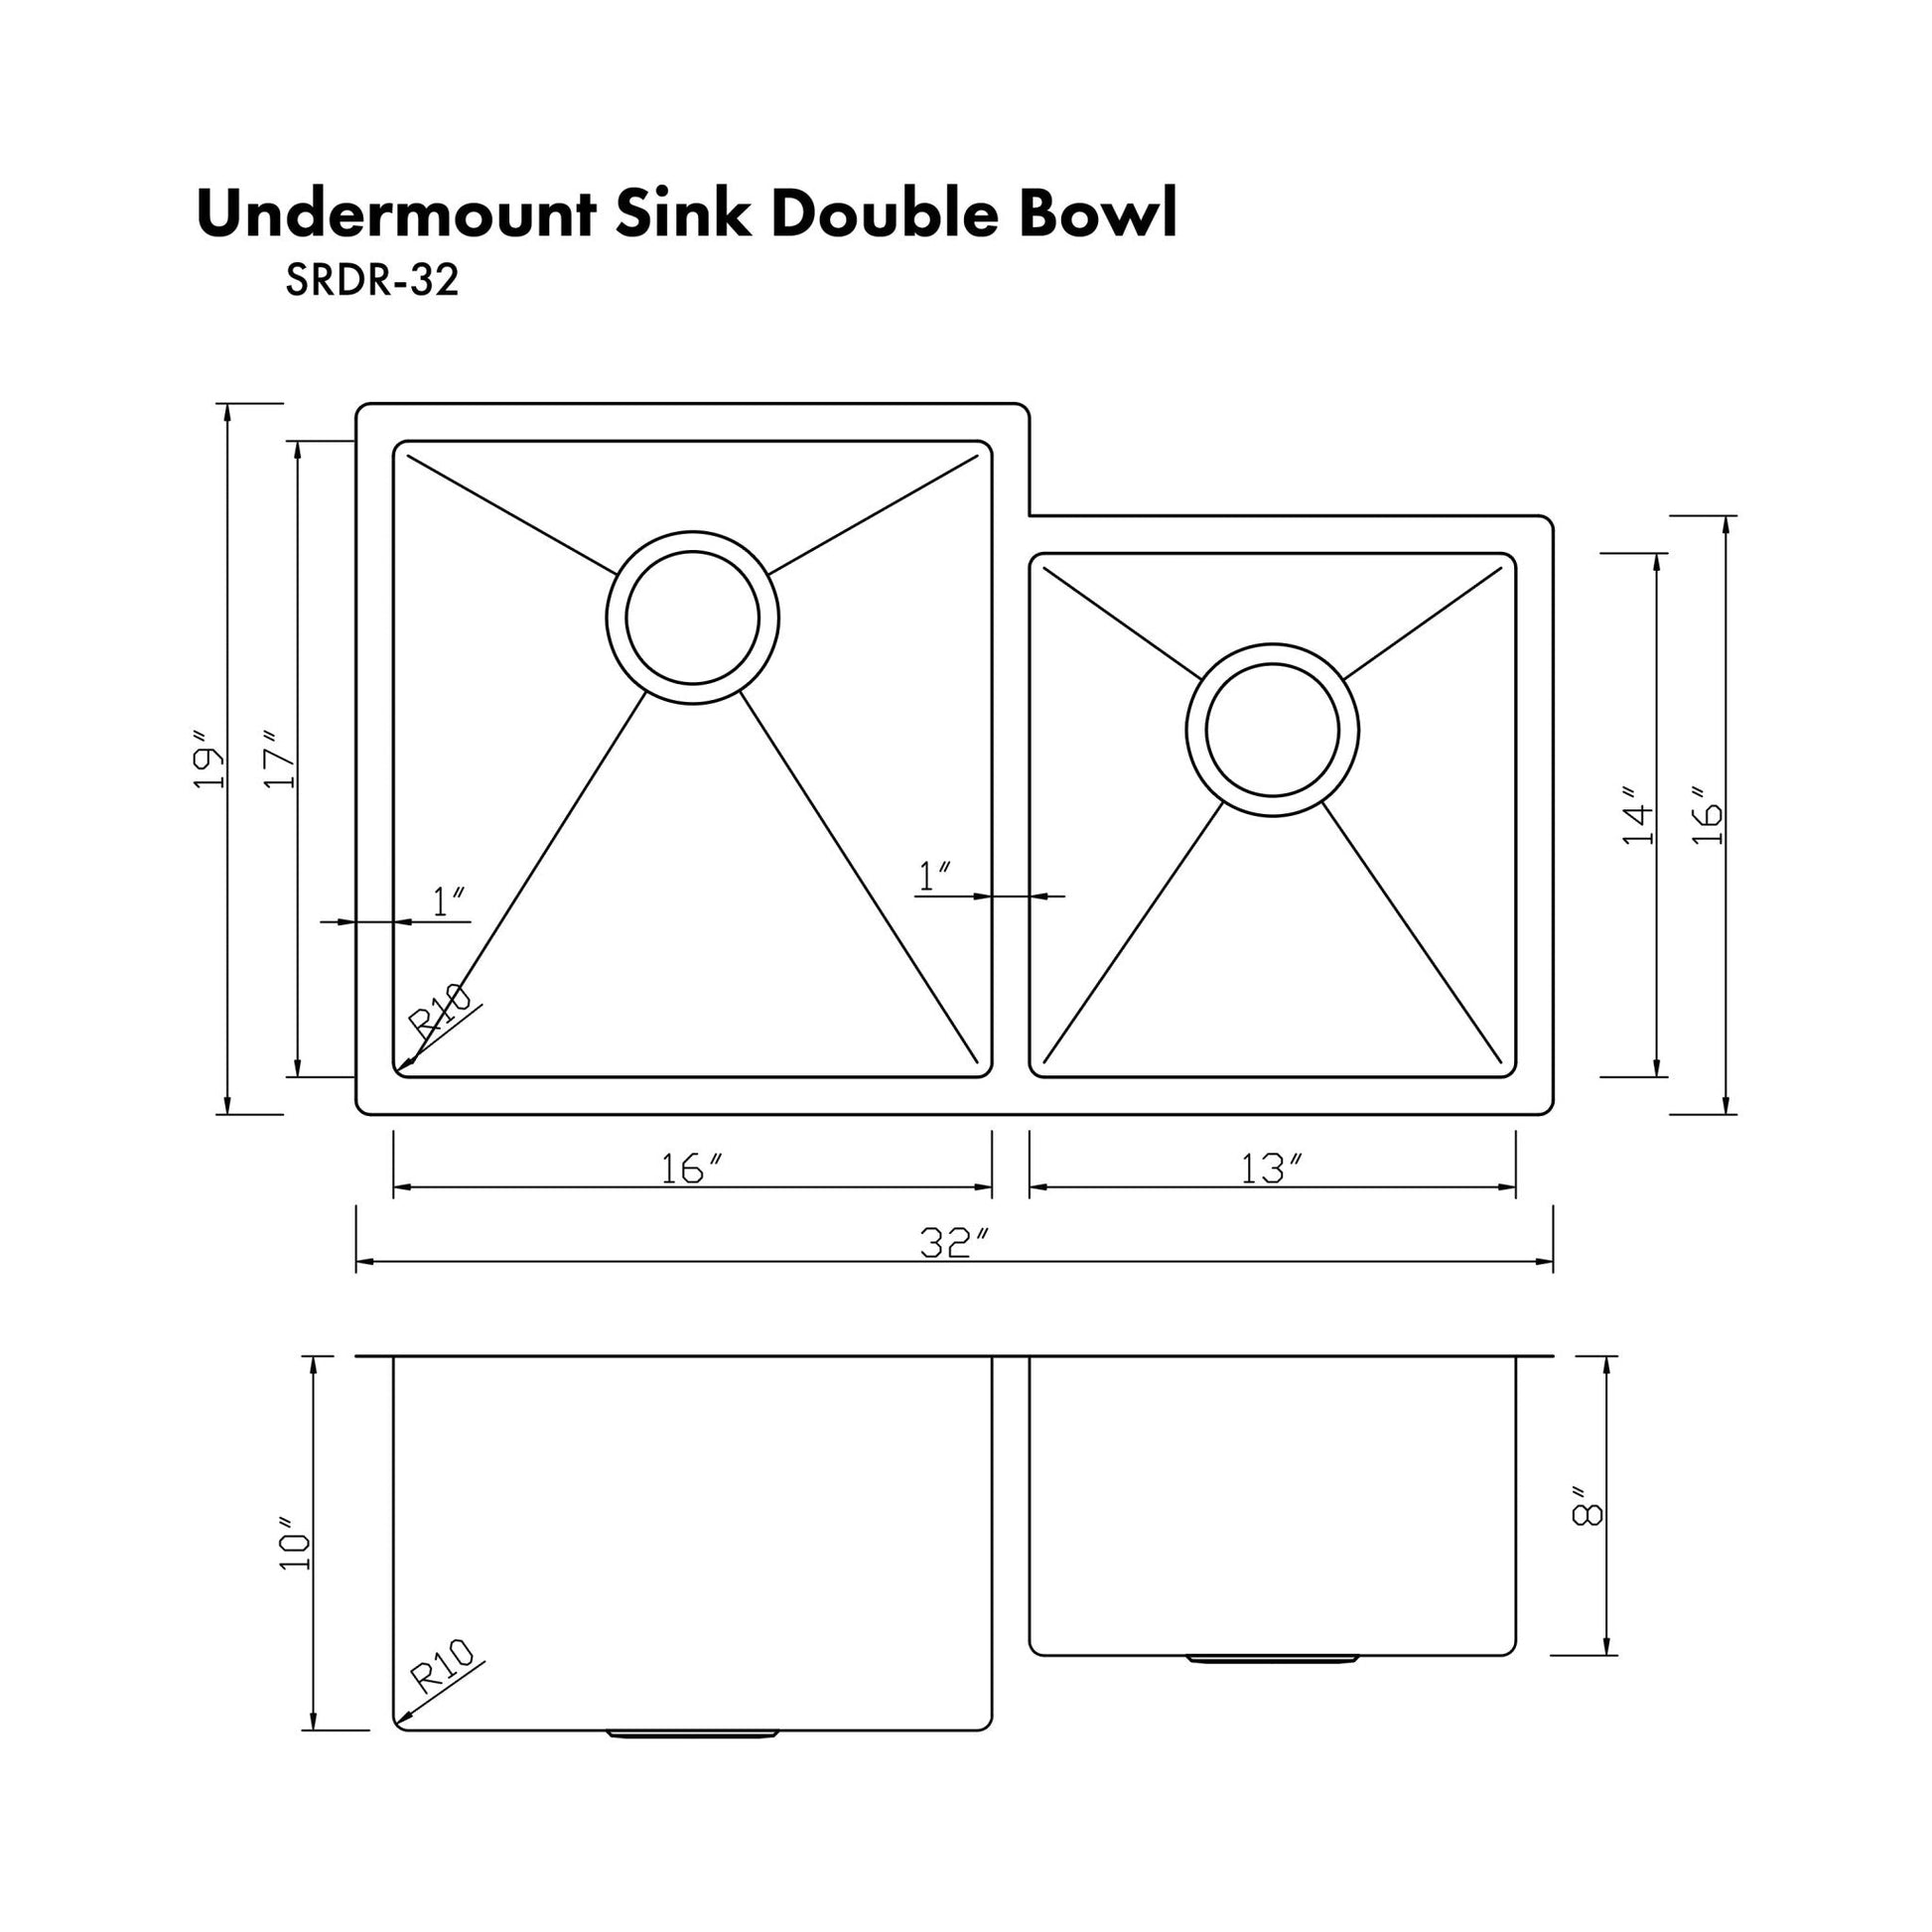 ZLINE 32 in. Jackson Undermount Double Bowl Kitchen Sink with Bottom Grid (SRDR-32) ZLINE Kitchen and Bath